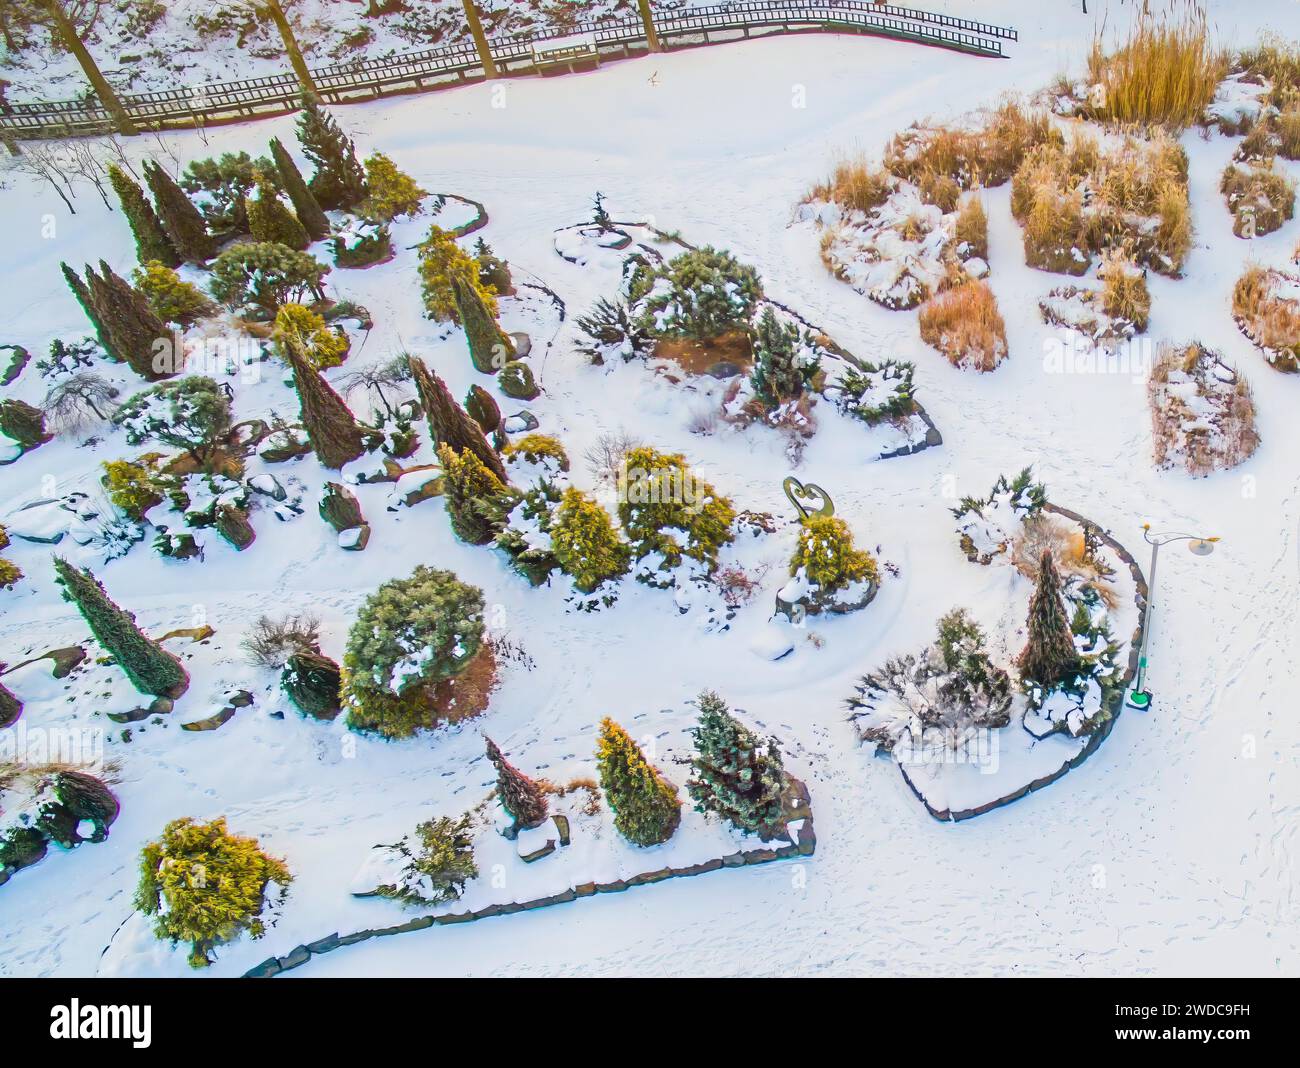 Vista aerea del parco pubblico innevato. Alberi sempreverdi e impronte di piedi nella neve visti dall'alto. Passerella in legno ai margini del parco su un Foto Stock